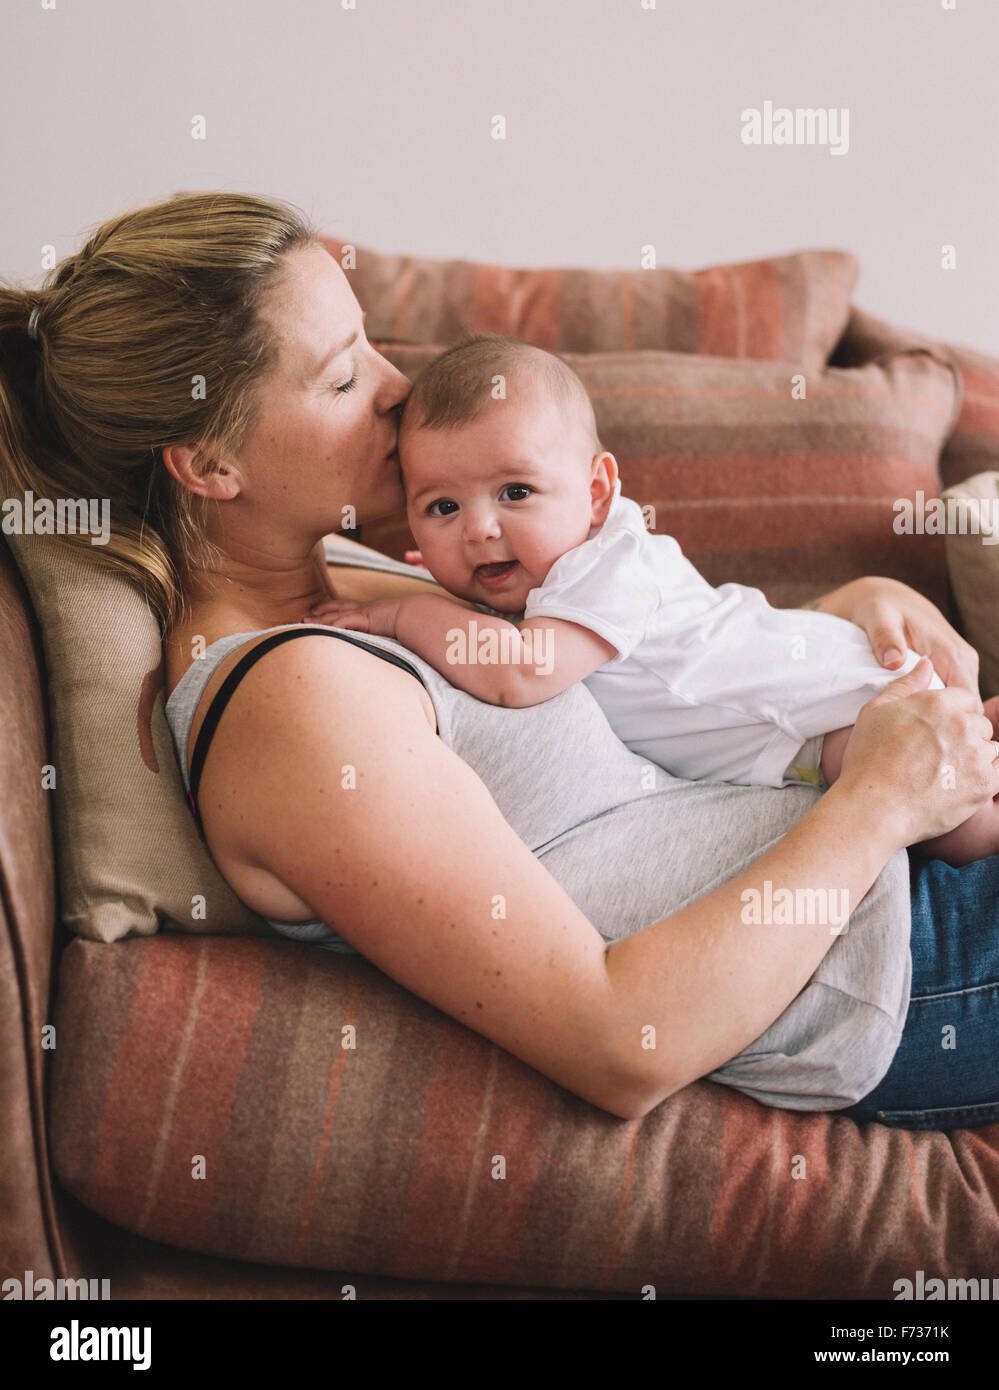 Una donna sdraiata su un divano a giocare con una bambina, baciando la sua testa. Foto Stock